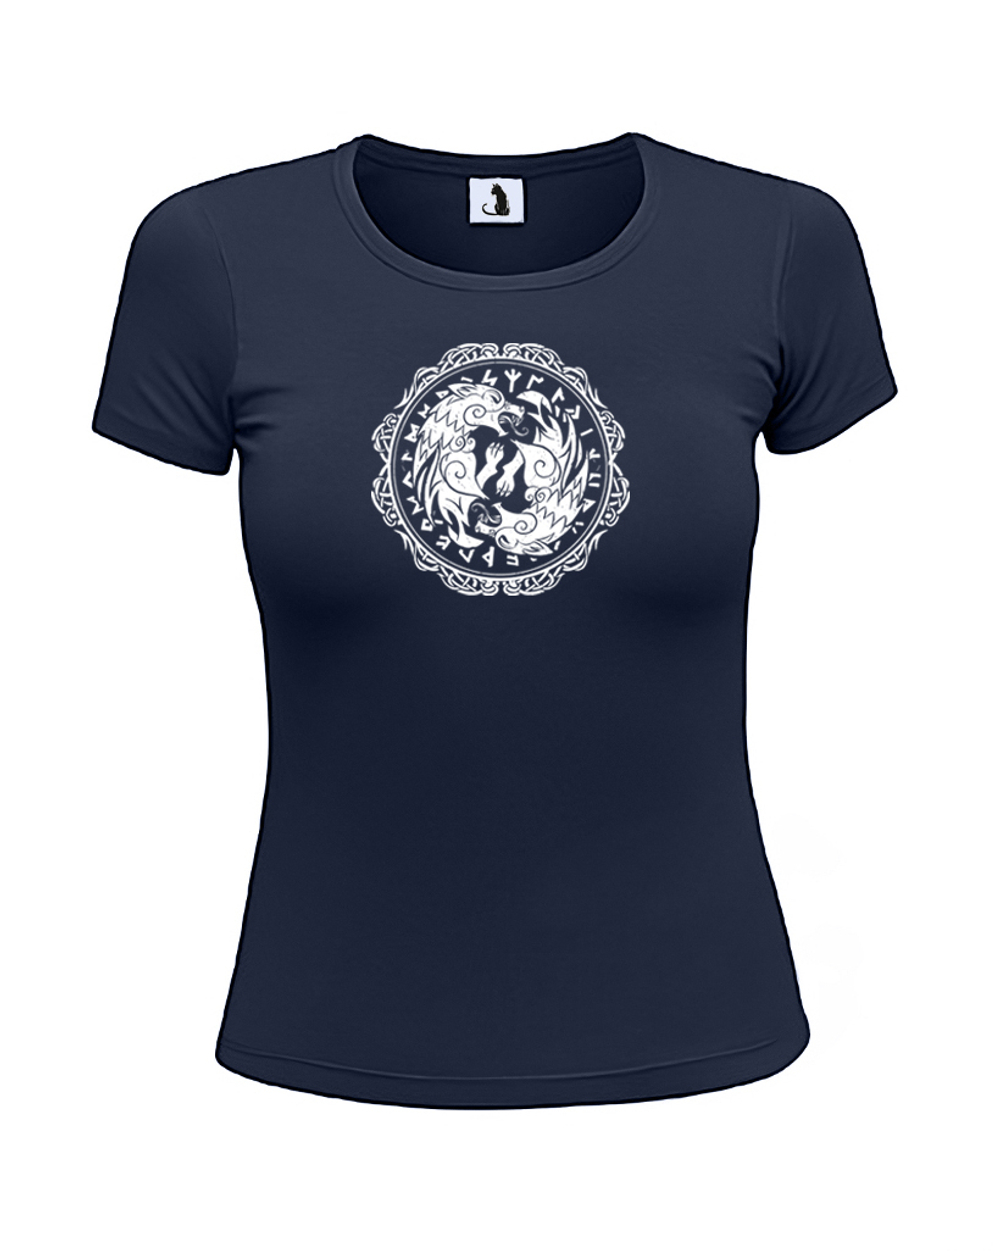 Скандинавская футболка с волком и рунами женская приталенная темно-синяя с белым рисунком